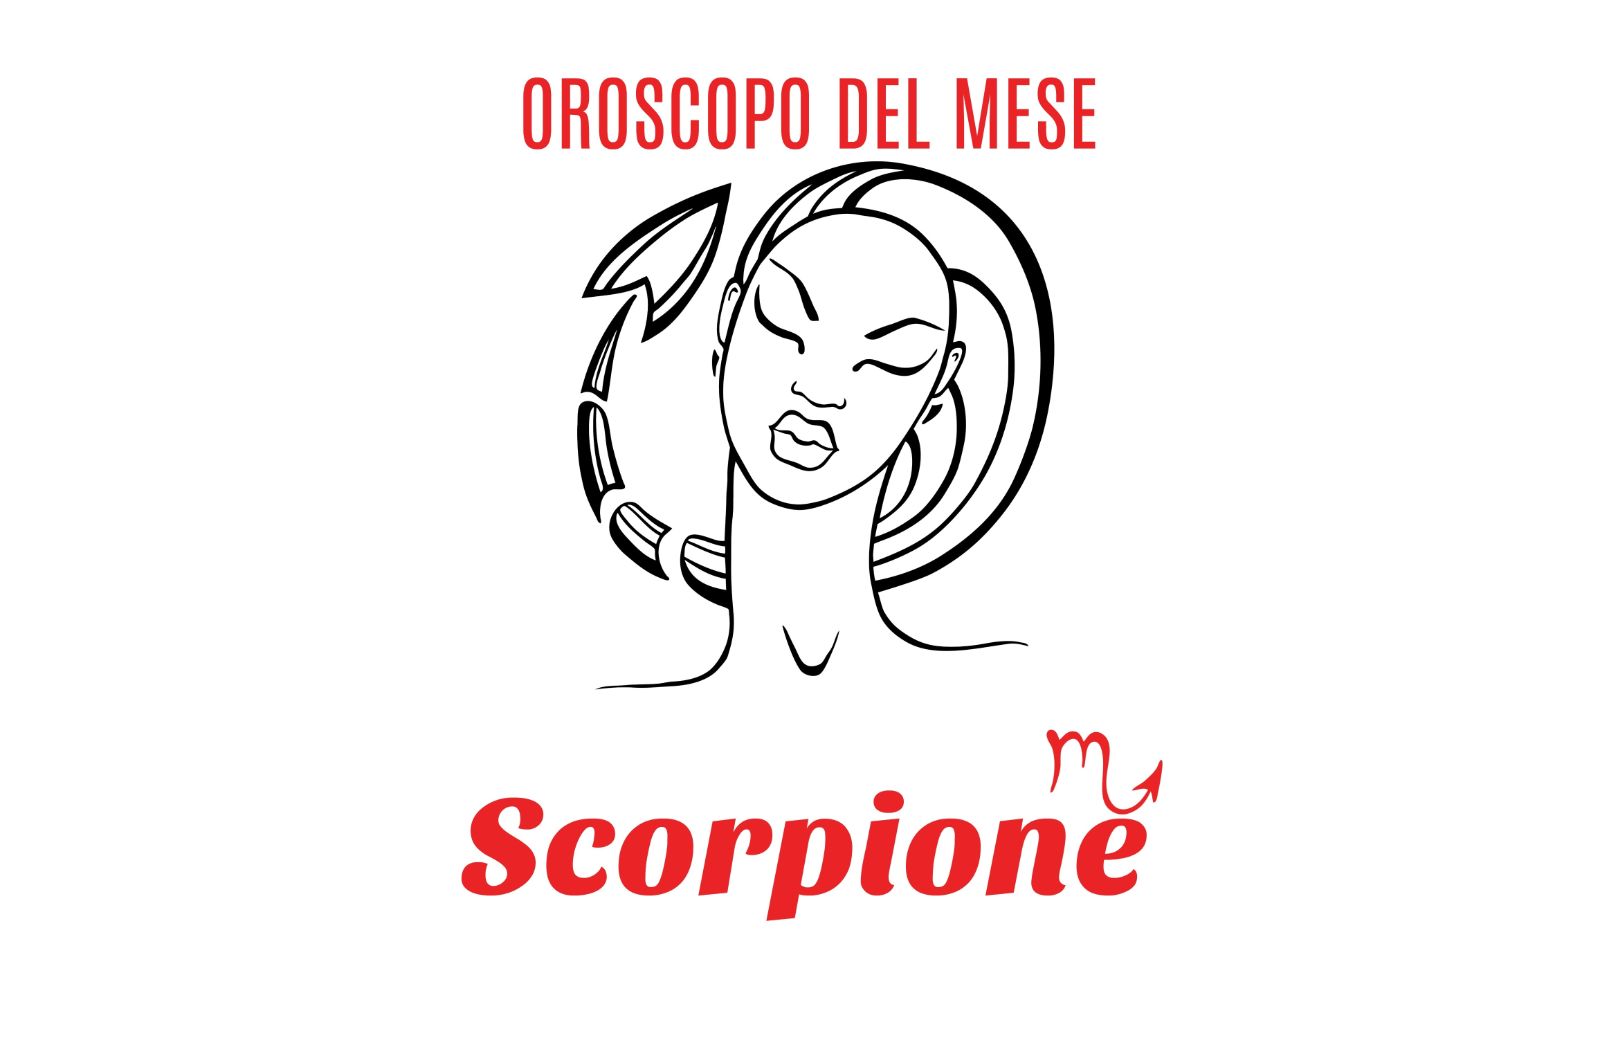 Oroscopo del mese: Scorpione - ottobre 2019